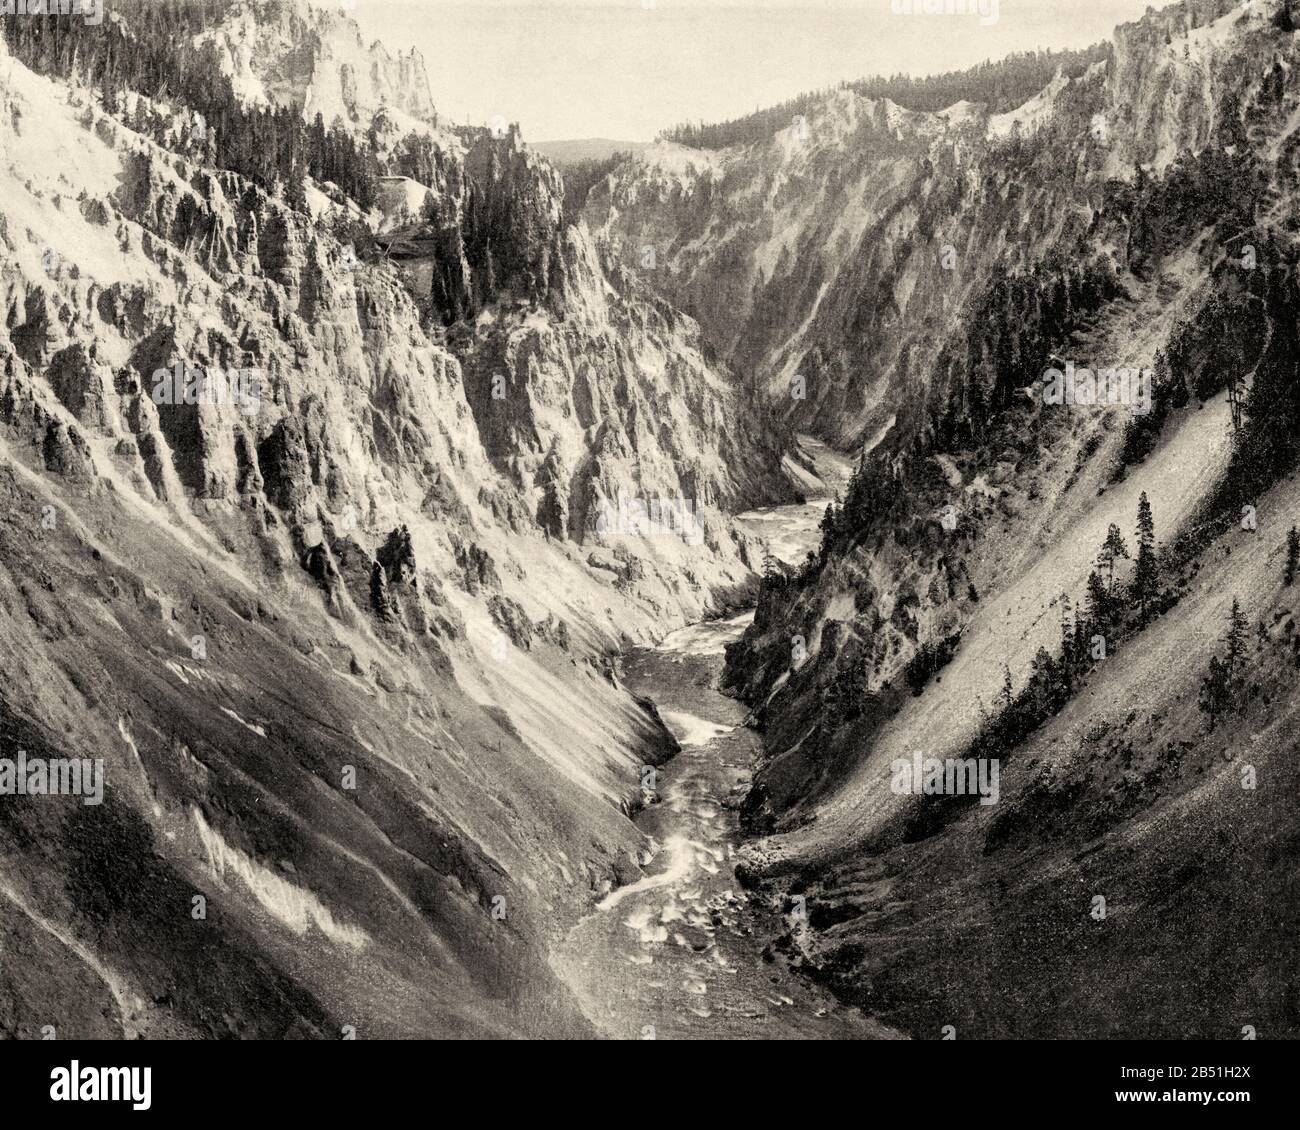 El Gran Cañón Yellowstone Park Estados Unidos. Antigua fotografía de finales del siglo 19 de Portafolio De Fotografías por John L Stoddard 1899 Foto de stock